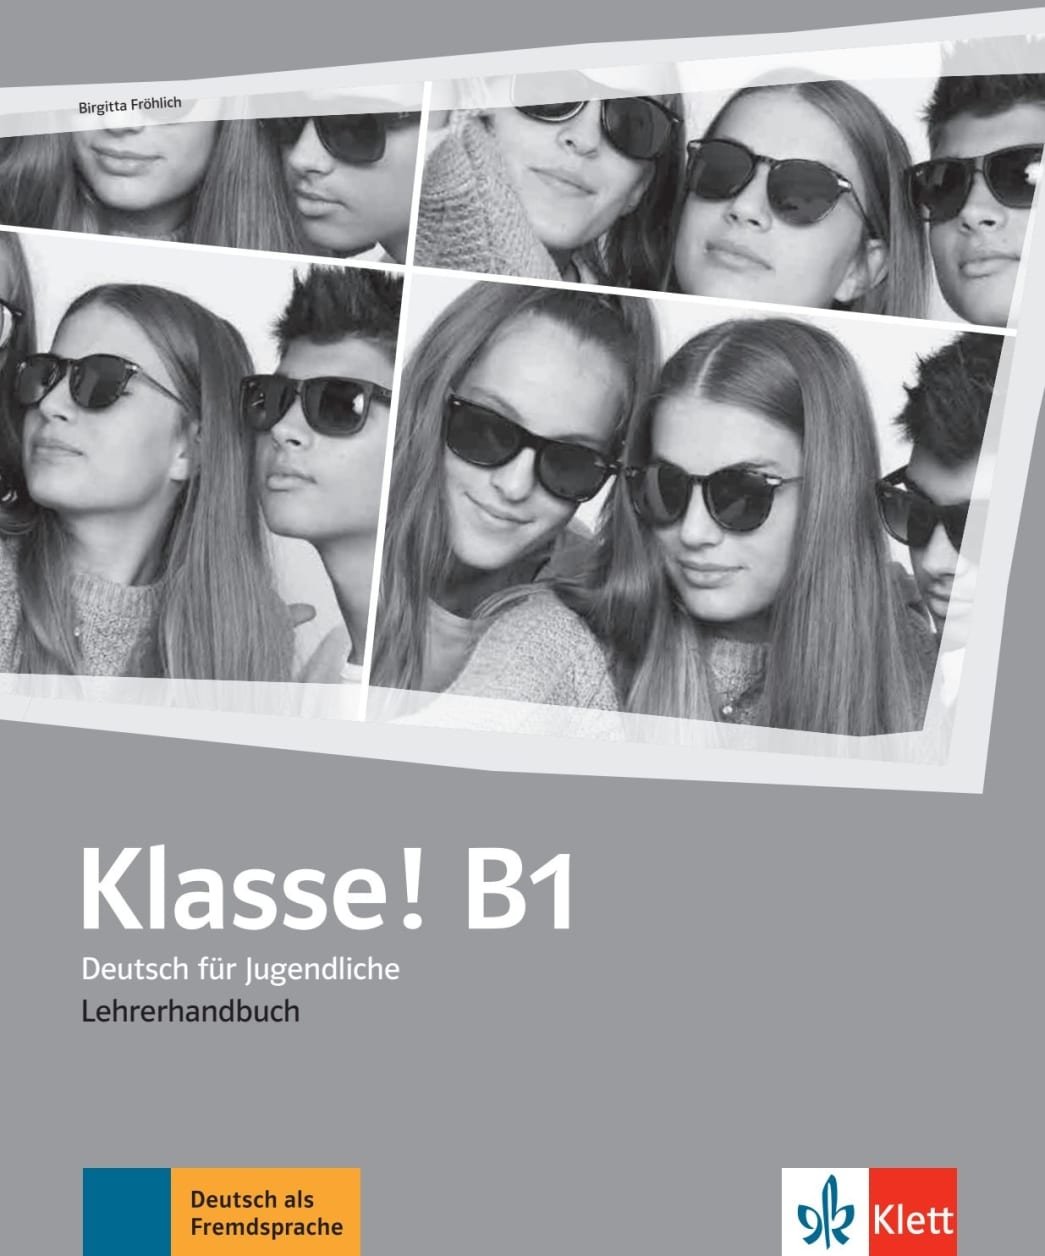 Акция на Klasse! B1: Lehrerhandbuch от Y.UA